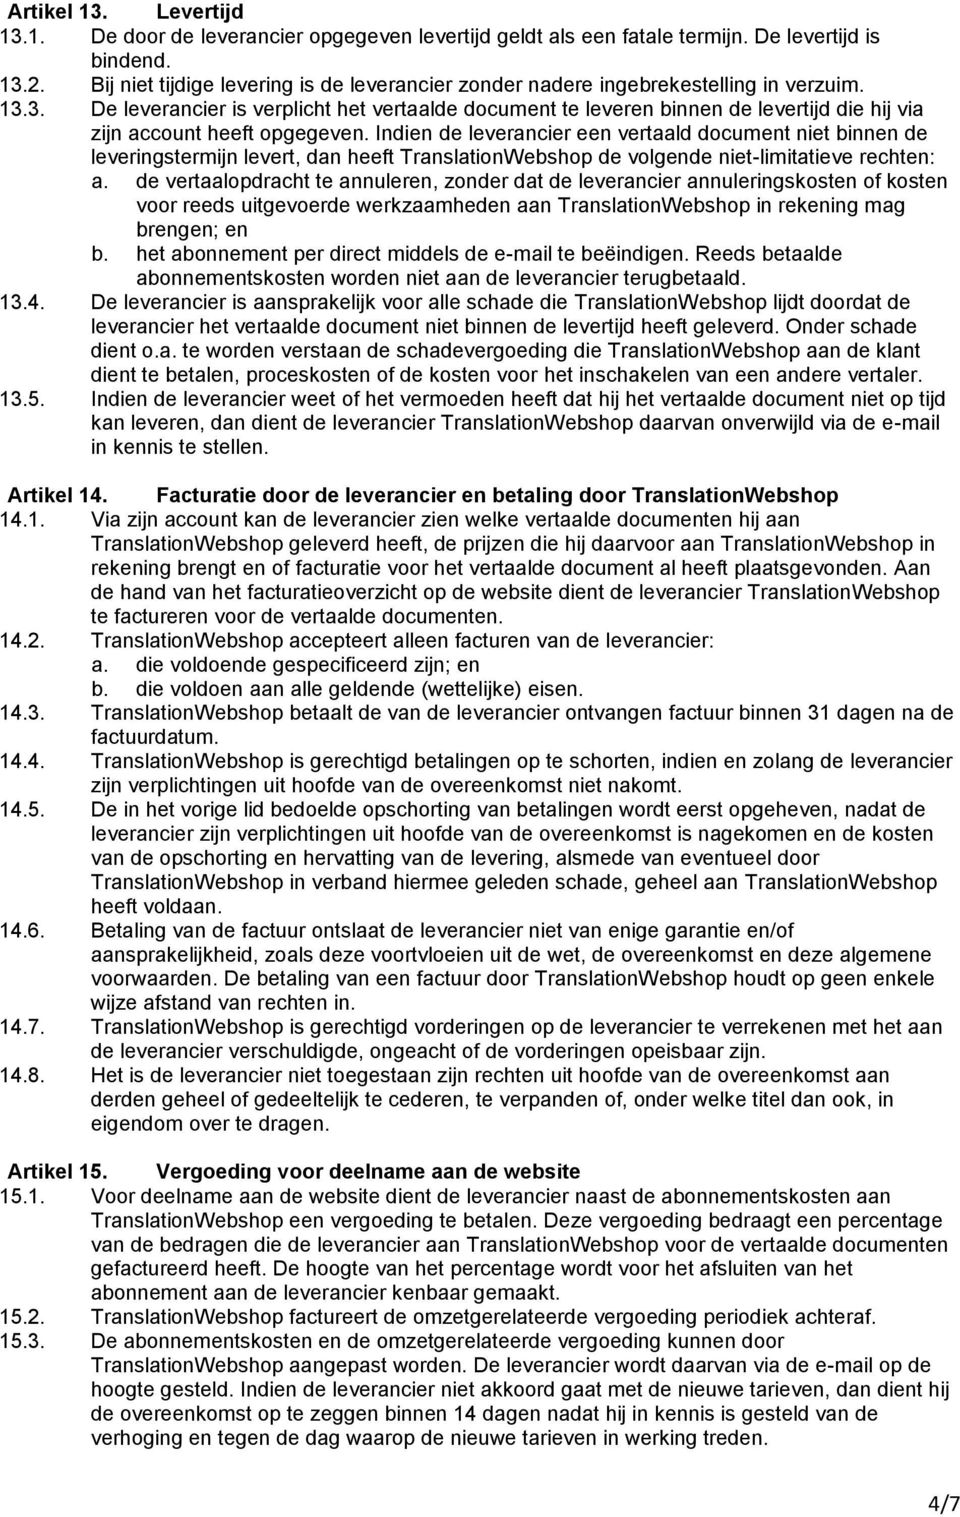 3. De leverancier is verplicht het vertaalde document te leveren binnen de levertijd die hij via zijn account heeft opgegeven.